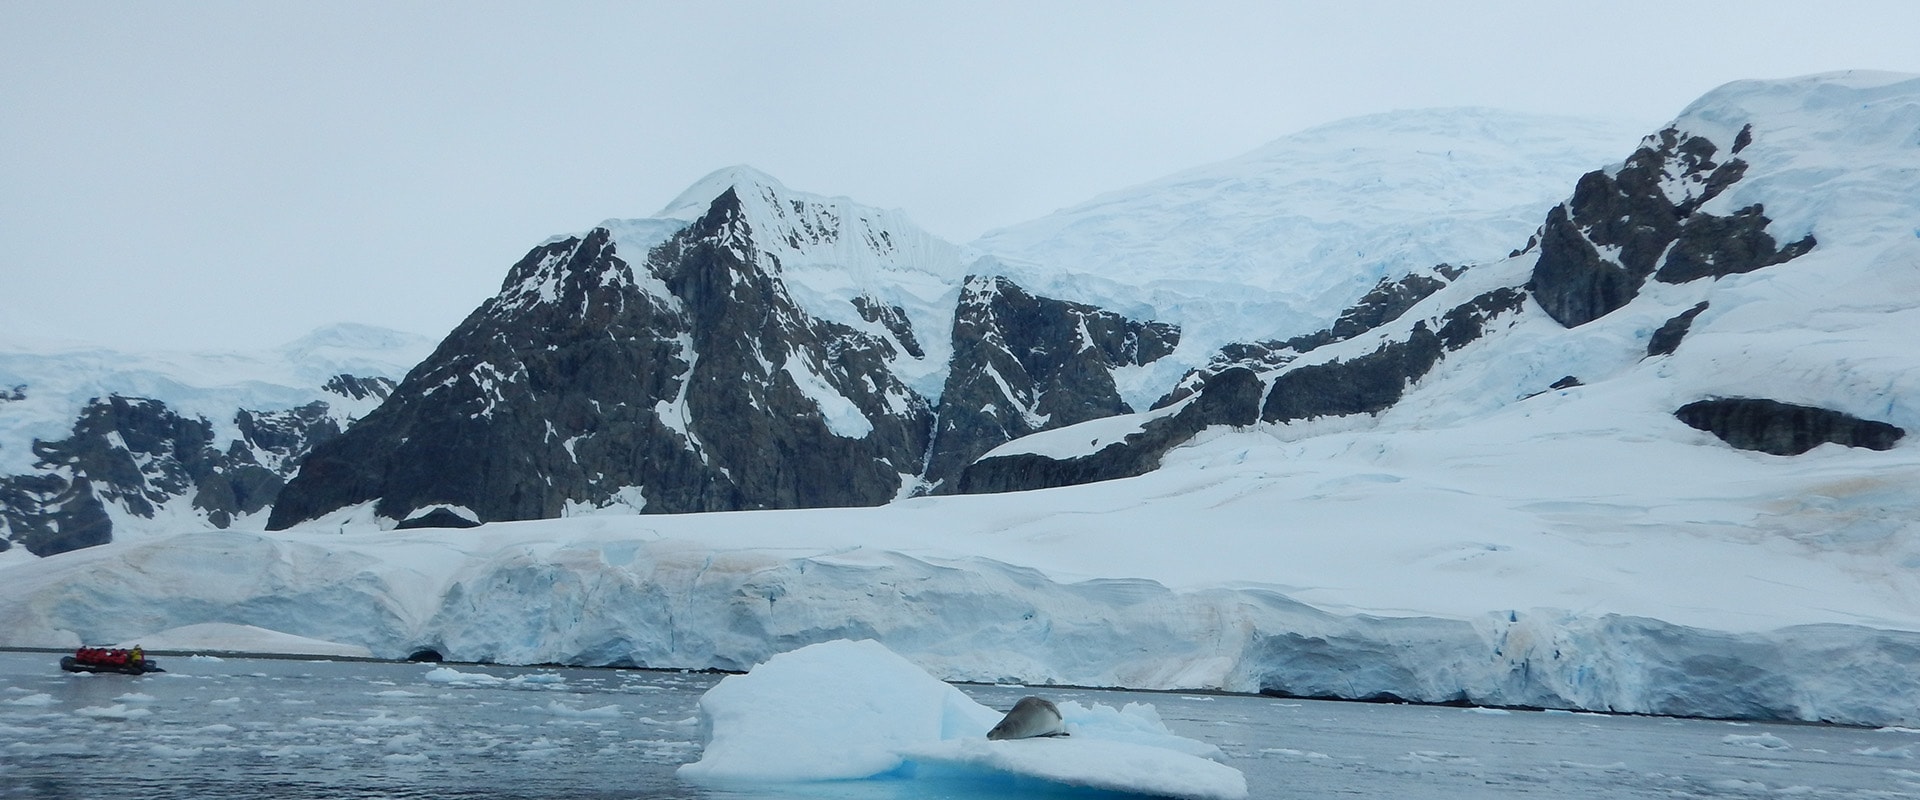 View of Antarctica icebergs